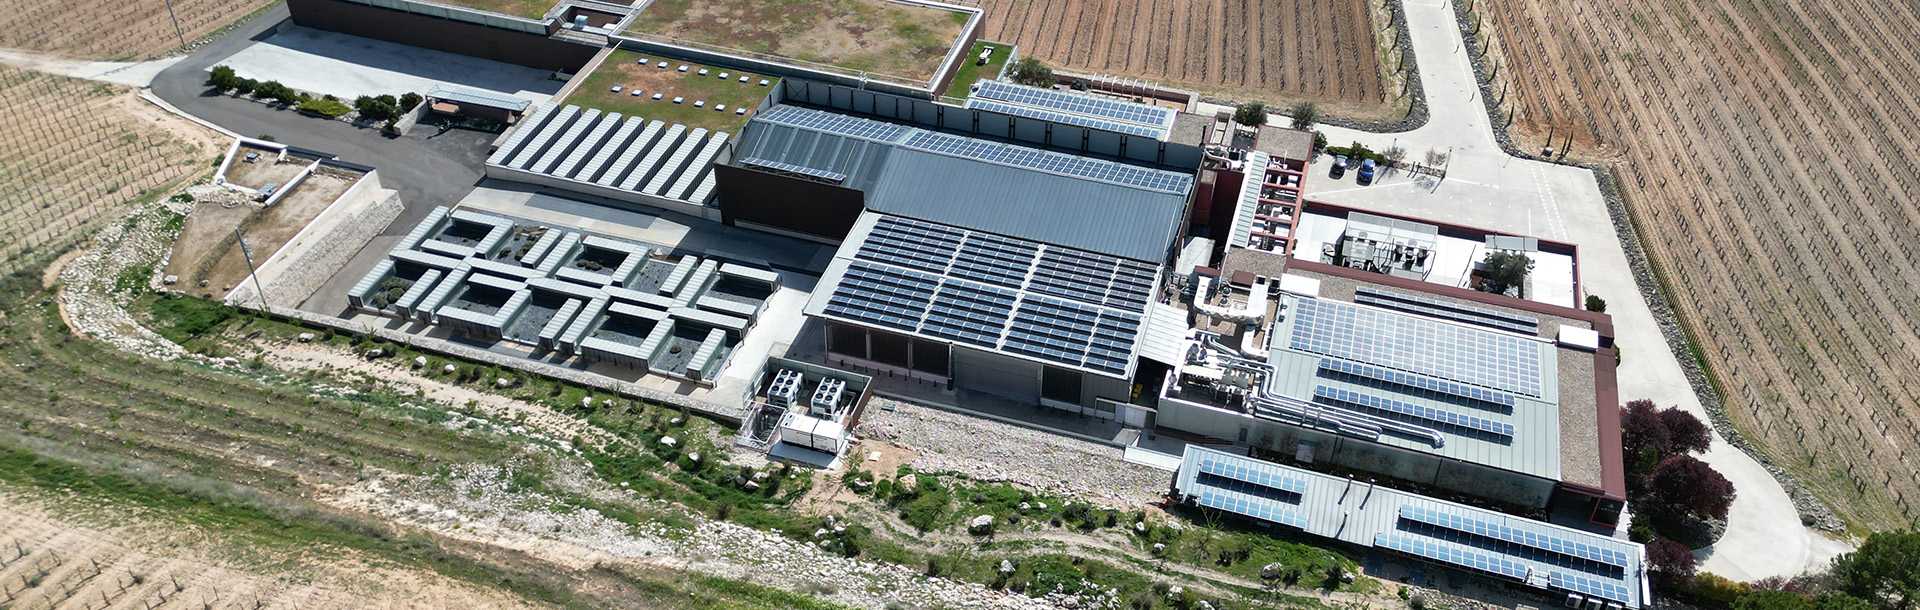 Dagartech completa con éxito la instalación de un grupo electrógeno de Alta Potencia en la bodega de Pago de Carraovejas